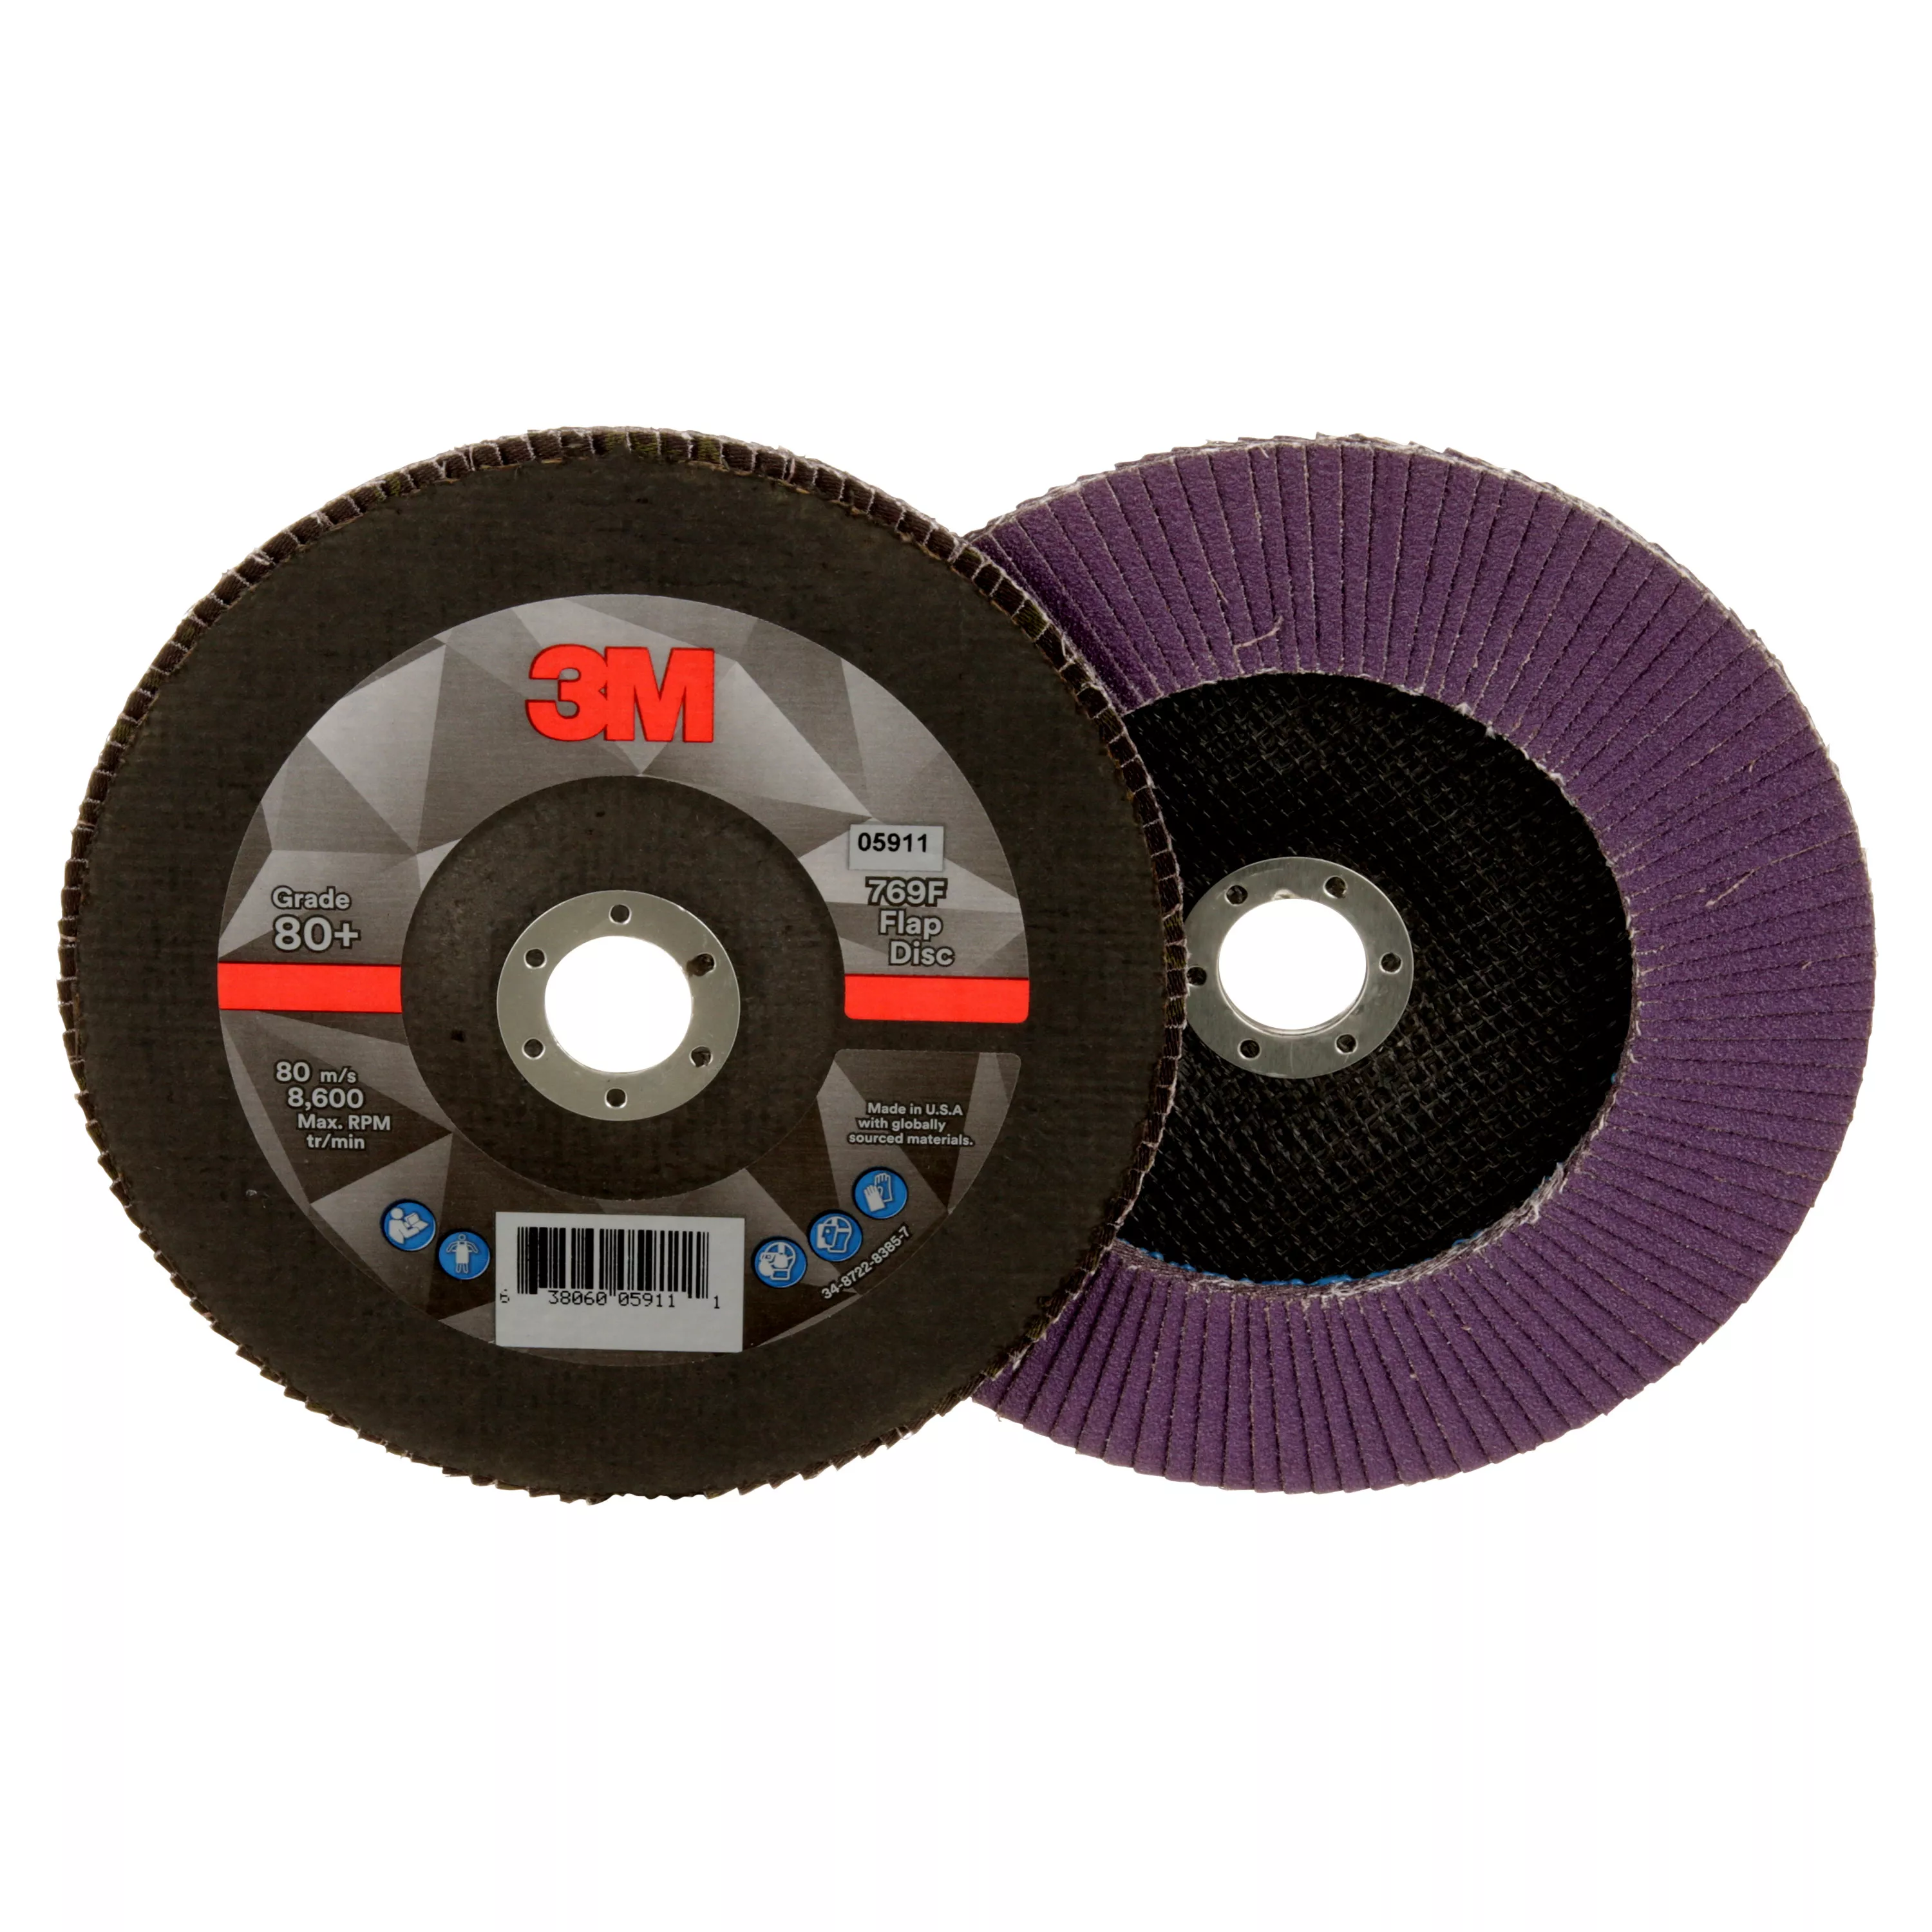 3M™ Flap Disc 769F, 80+, T27, 7 in x 7/8 in, 5 ea/Case